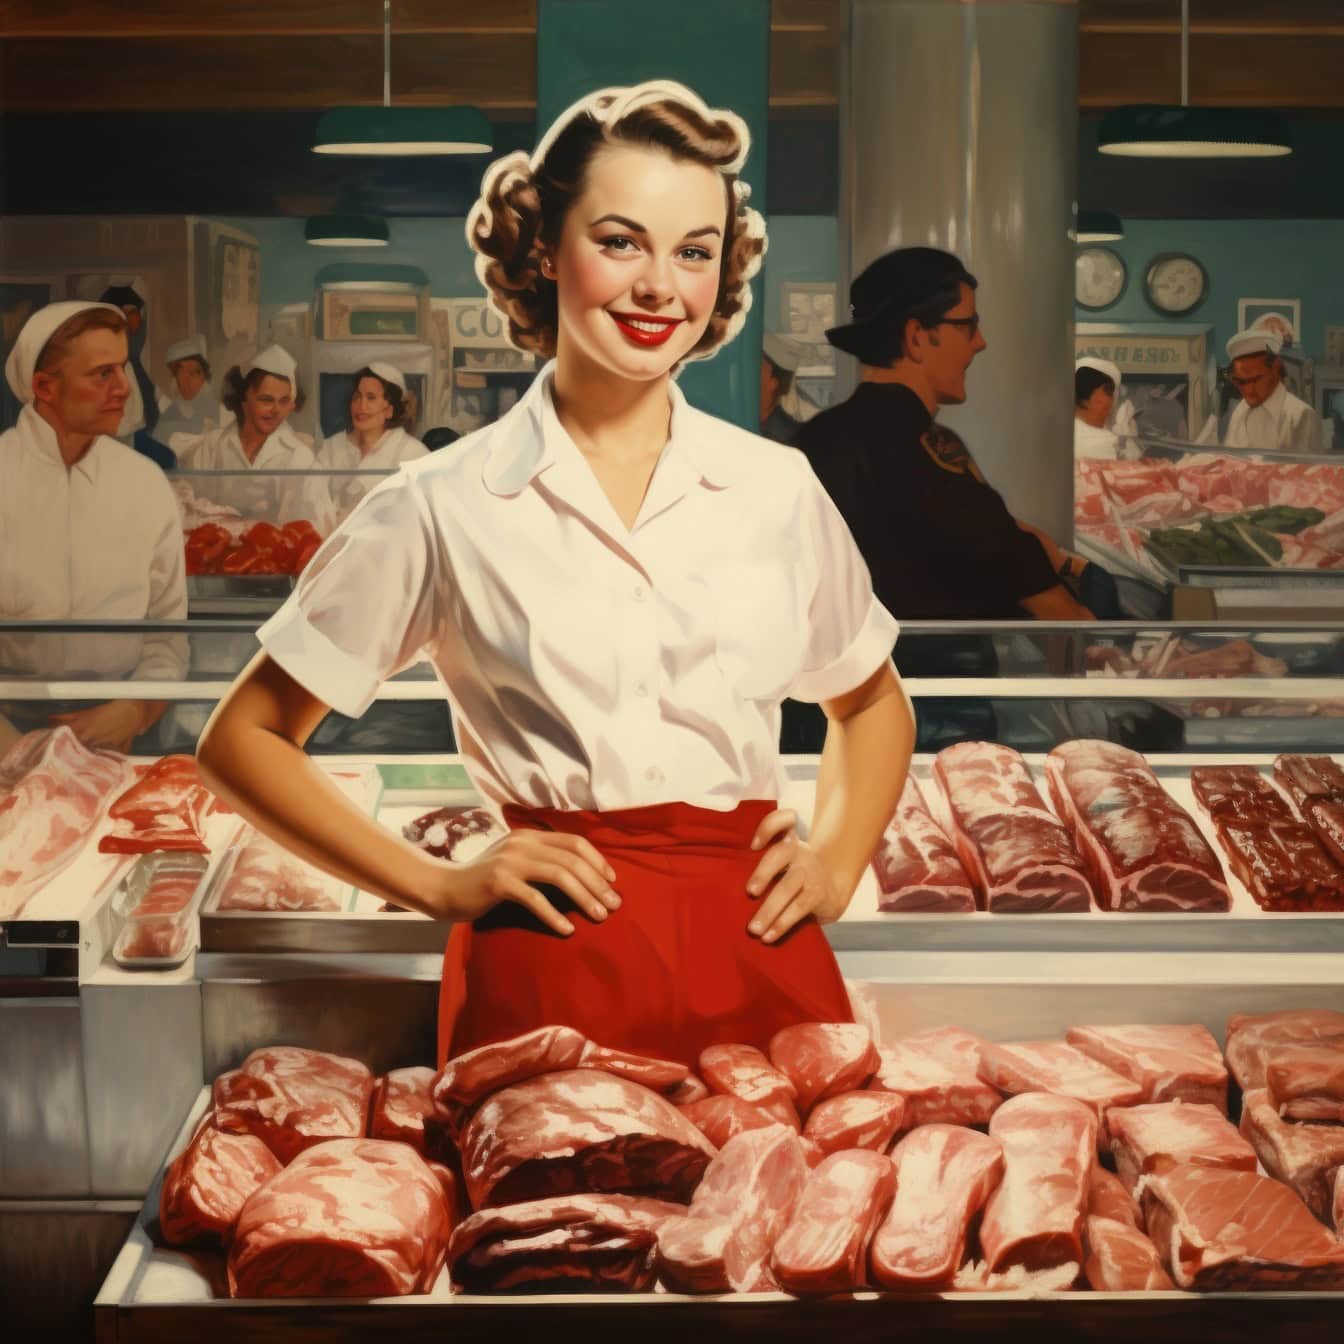 肉屋やスーパーマーケットで肉の前に立つ肉屋の女性、1960年代風のイラスト